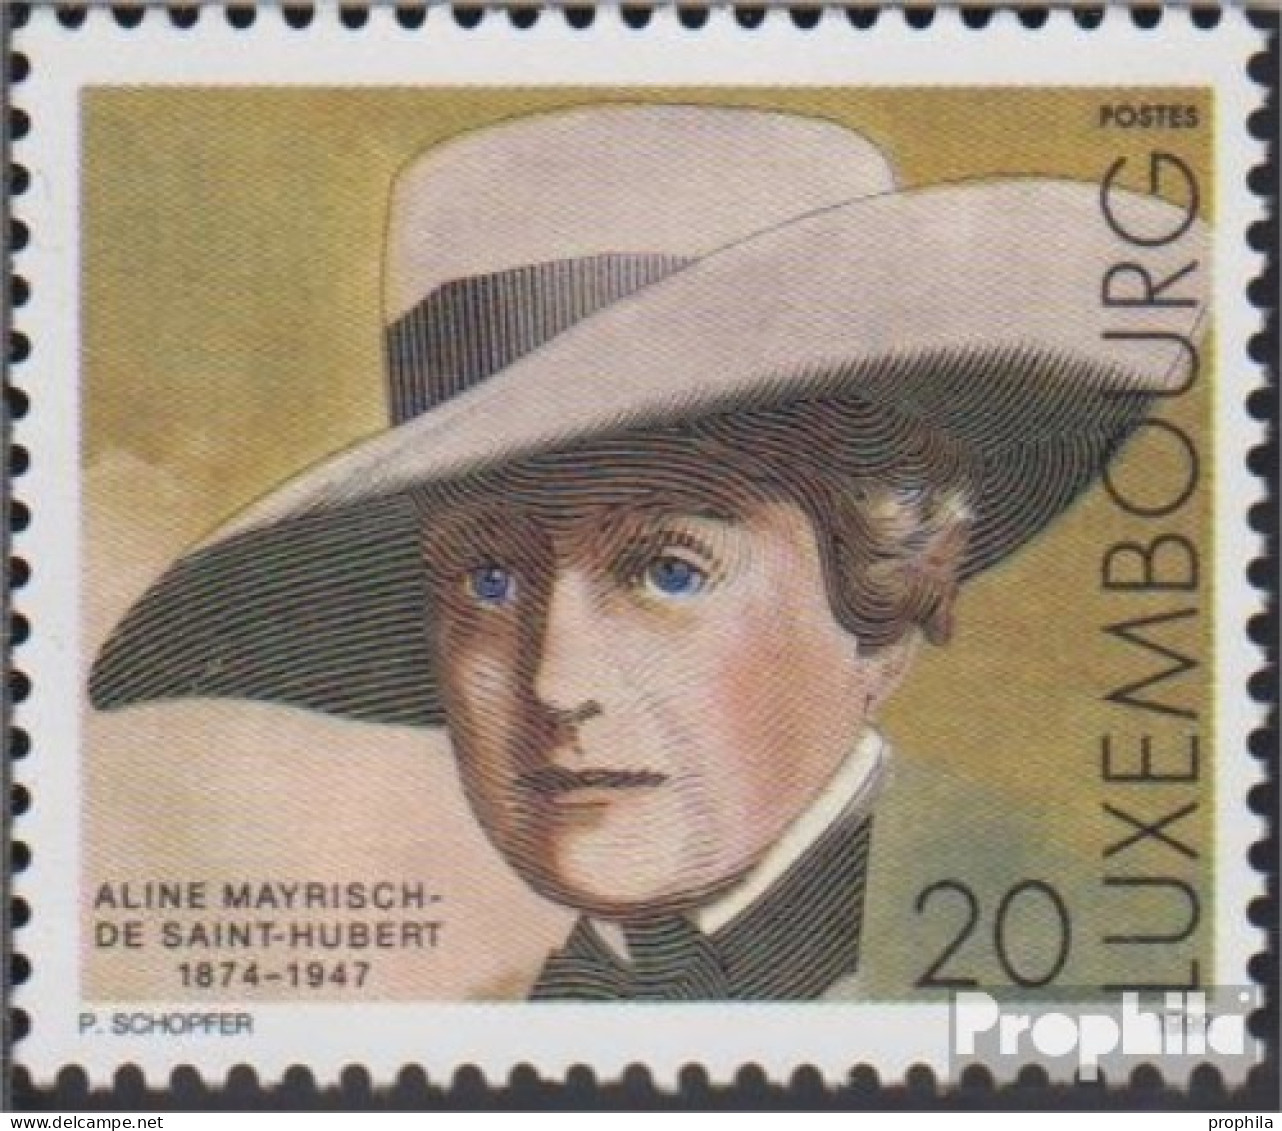 Luxemburg 1480 (kompl.Ausg.) Postfrisch 1999 Aline Mayrisch-de Saint-Hubert - Unused Stamps